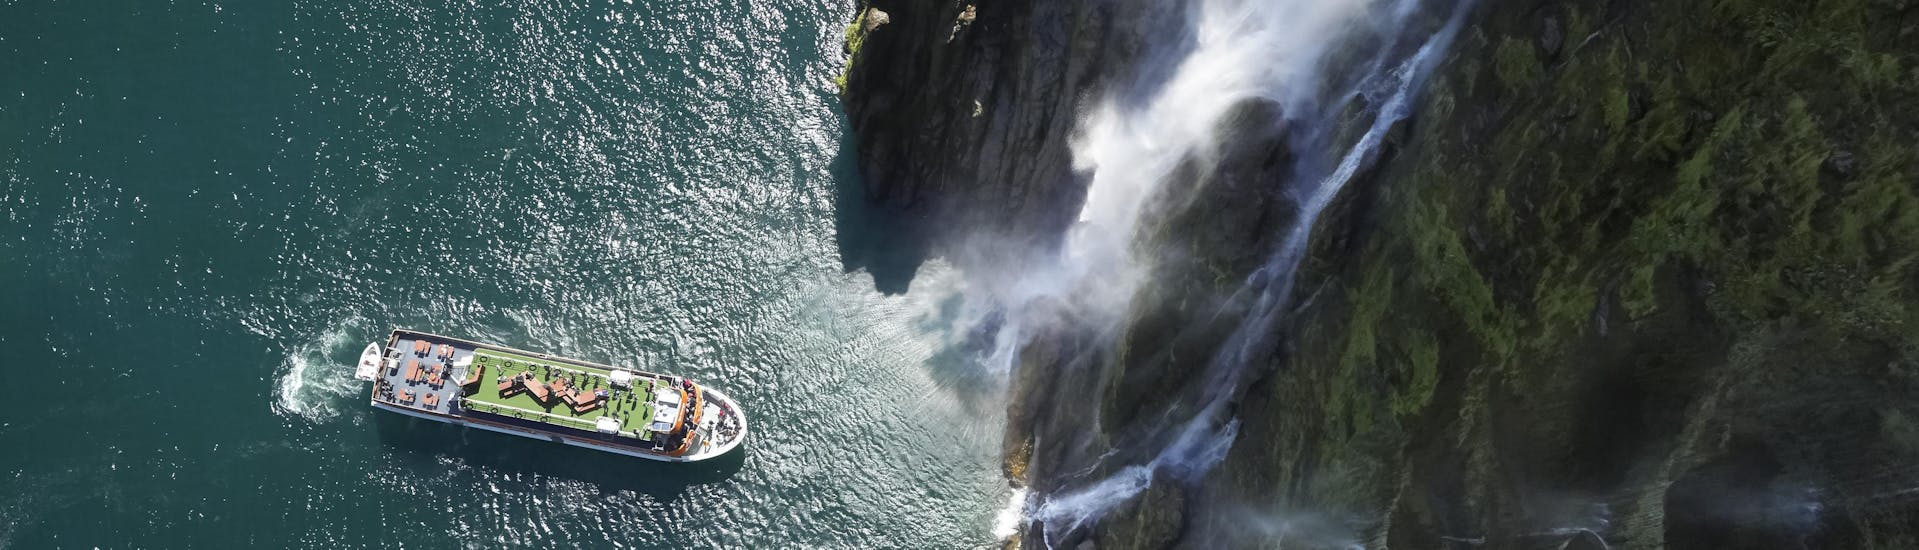 Balade en bateau - Milford Sound Fjord avec Observation de la faune & Visites touristiques.